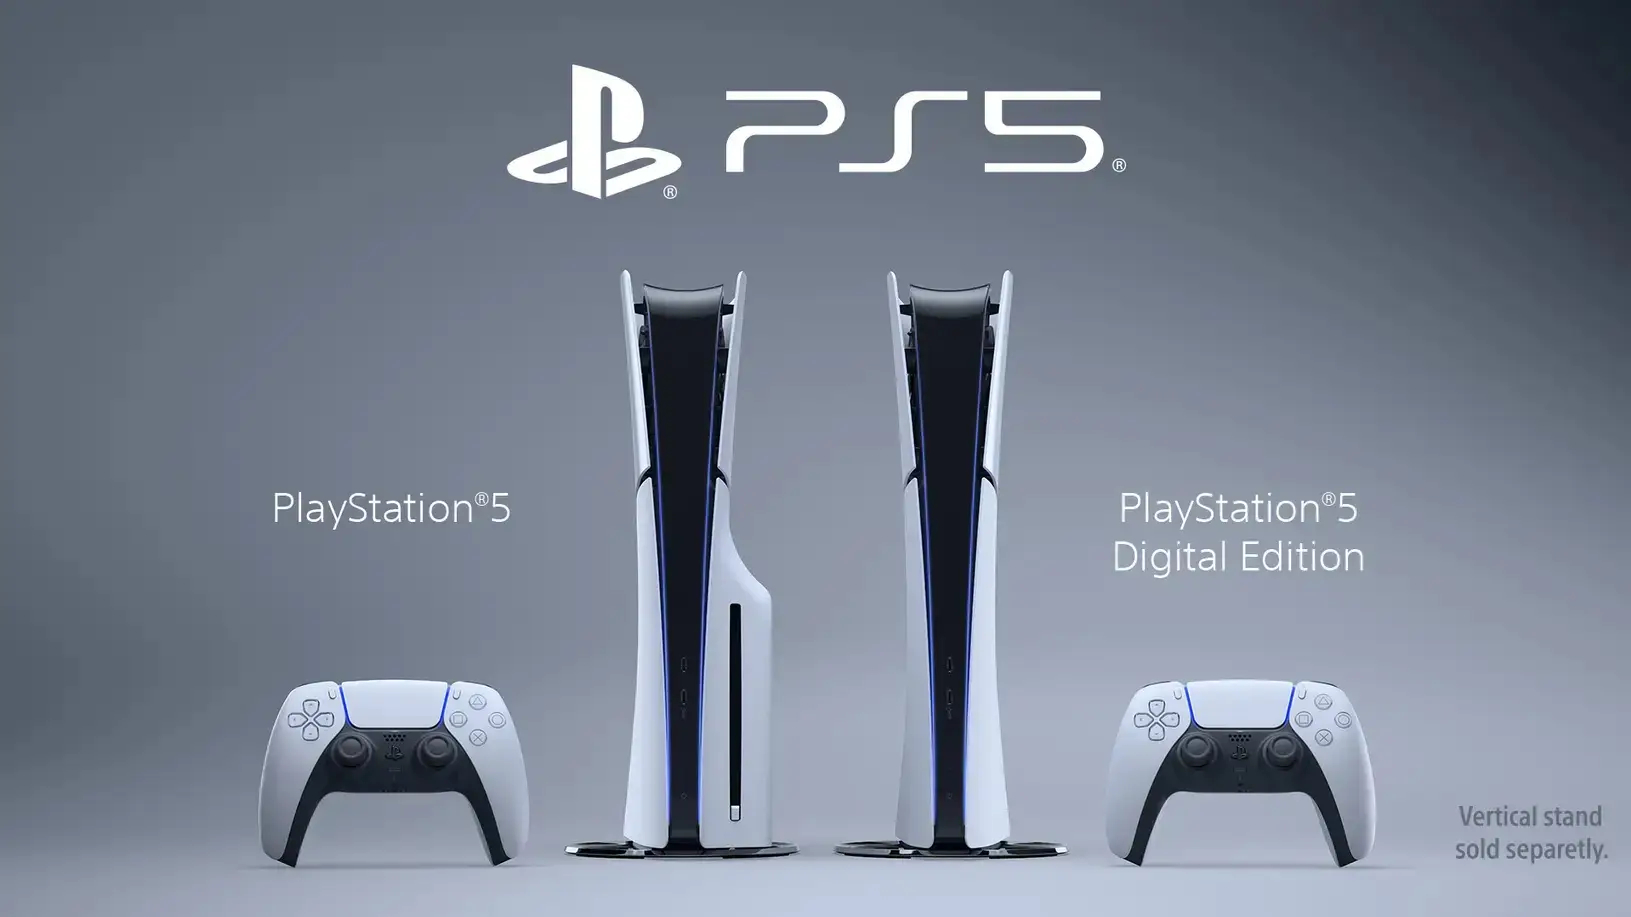 Playstation 5 Slim: In Deutschland ab 450 Euro verfügbar | heise online